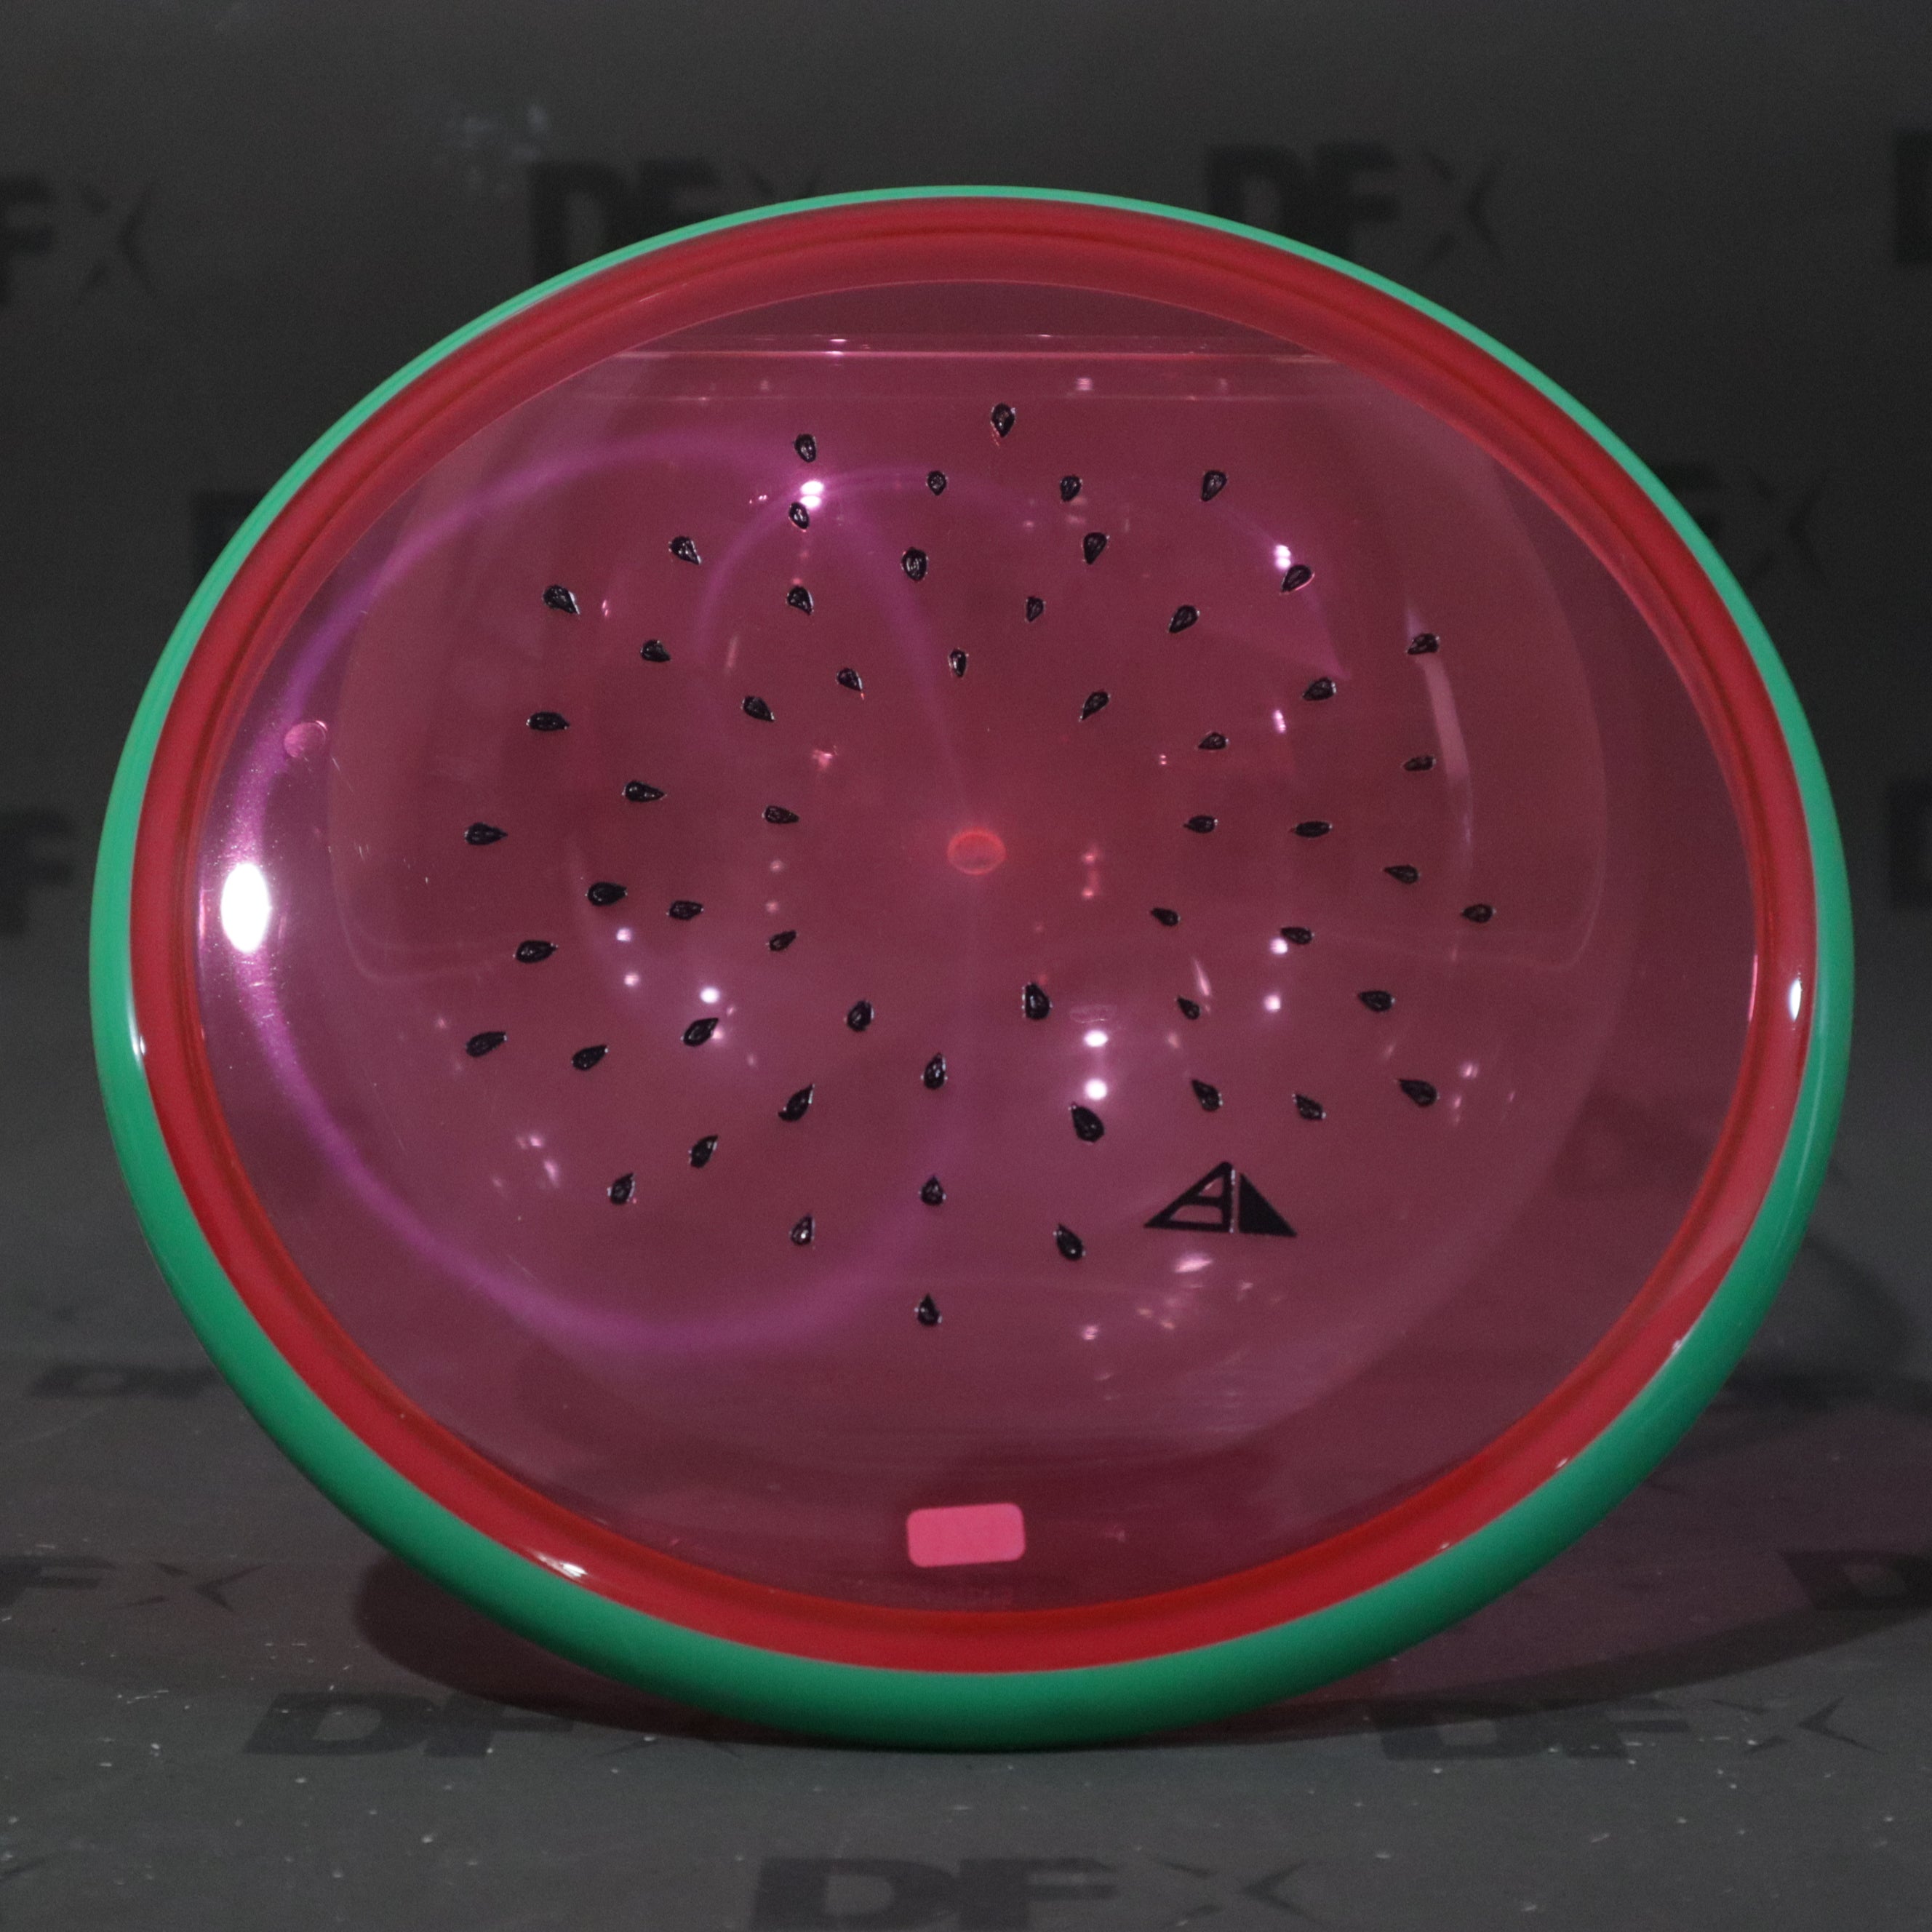 Axiom Proton Paradox - Watermelon Edition